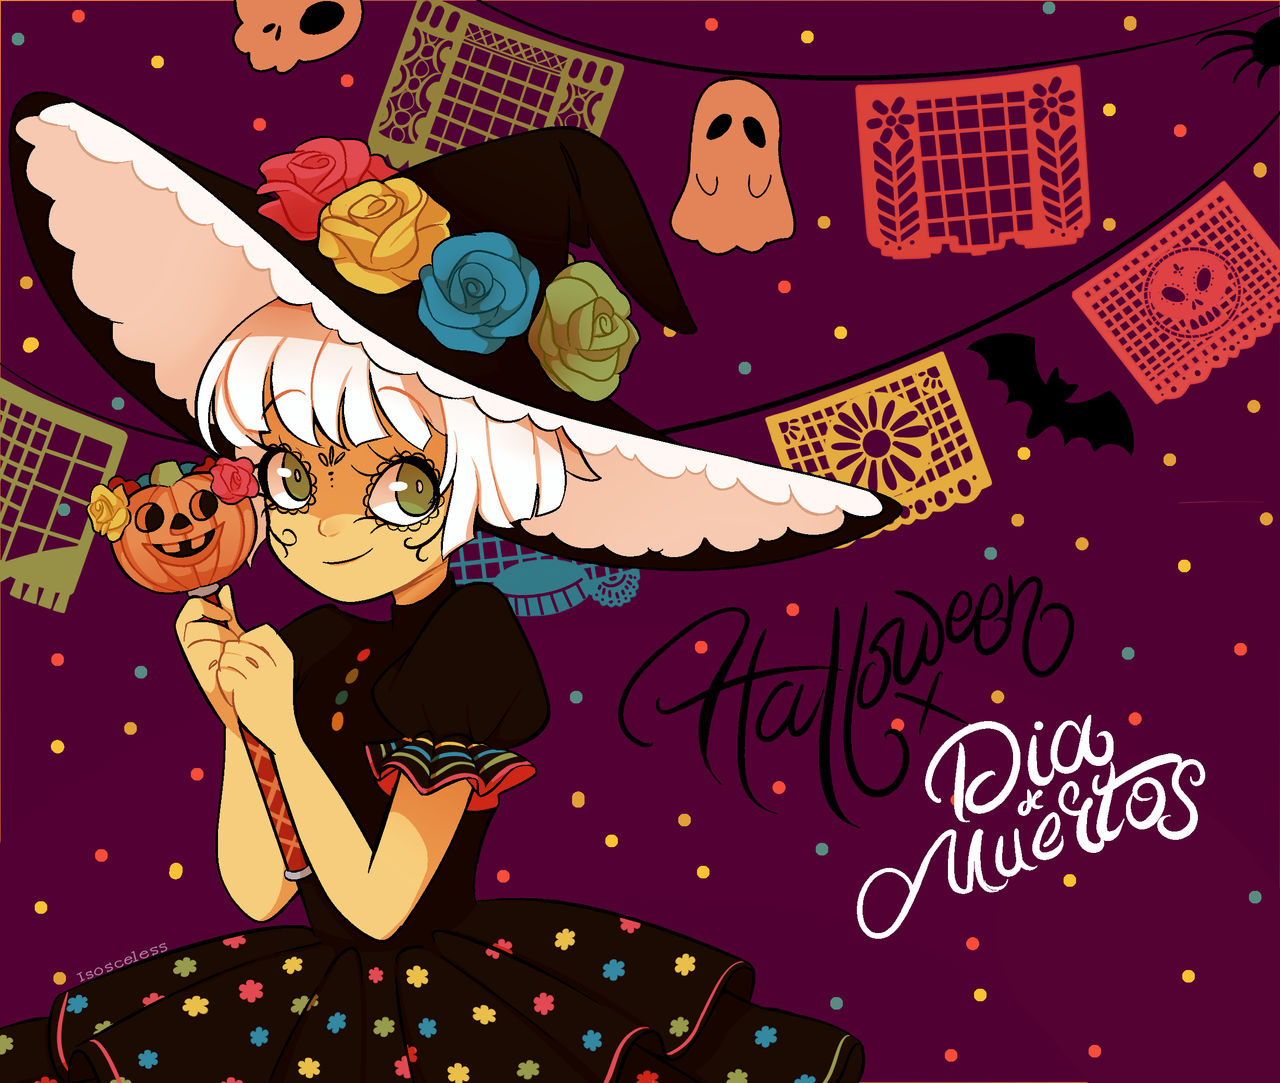 Halloween X Dia De Muertos by Isosceless on DeviantArt